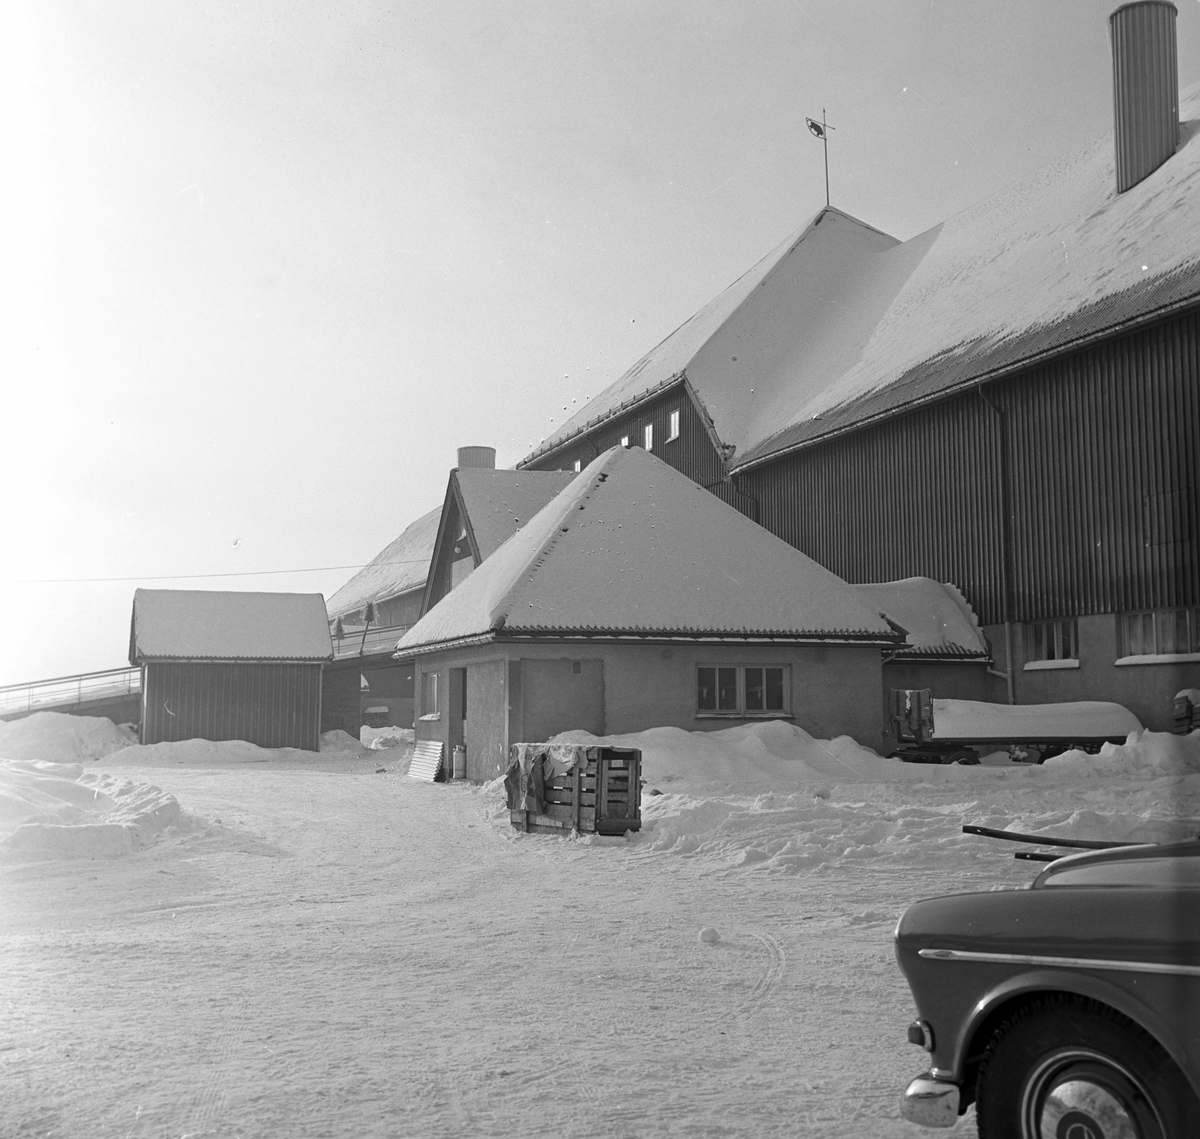 Serie. Sauer og griser på landbruksskolen i  Ås. Fotografert 20. jan. 1963.